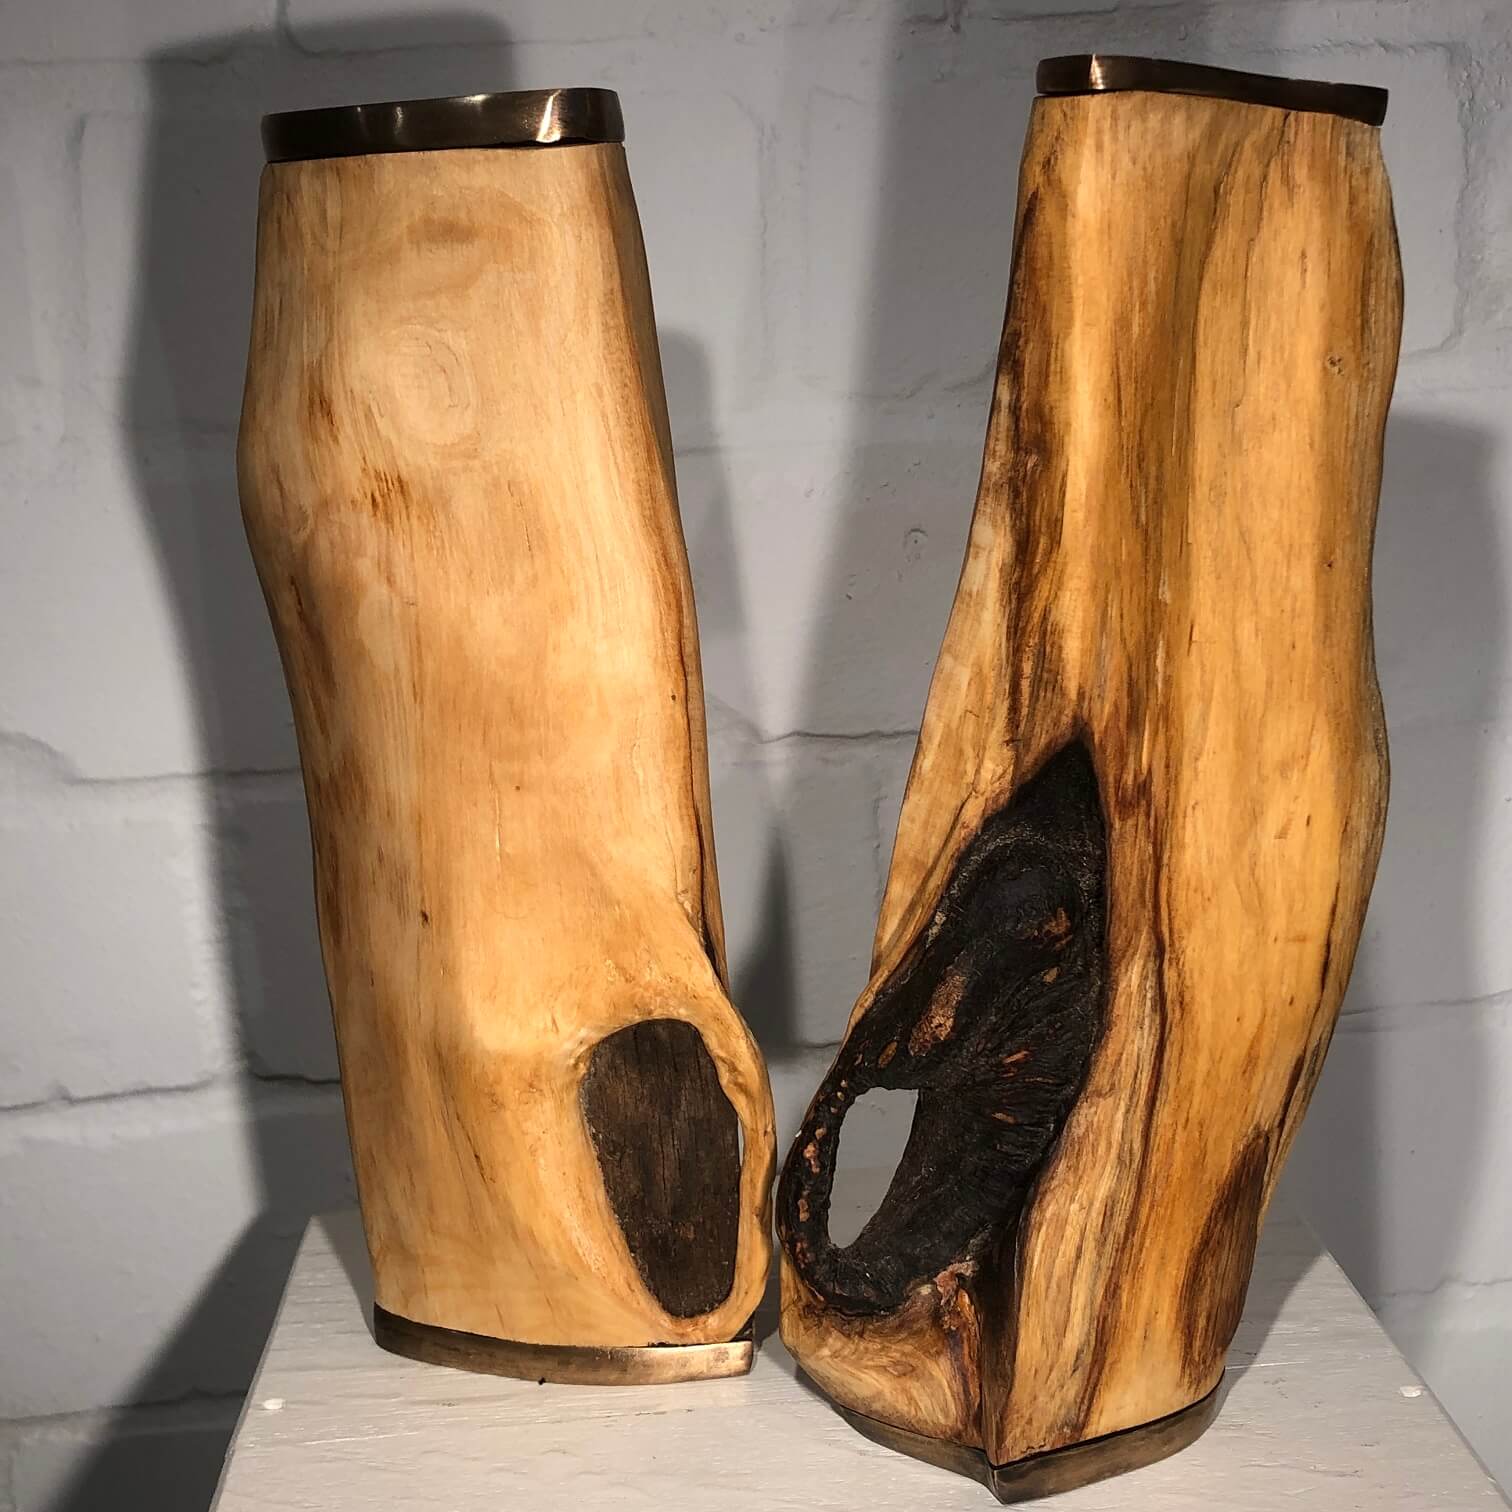 Zwei Formen aus Holz begegnen sich